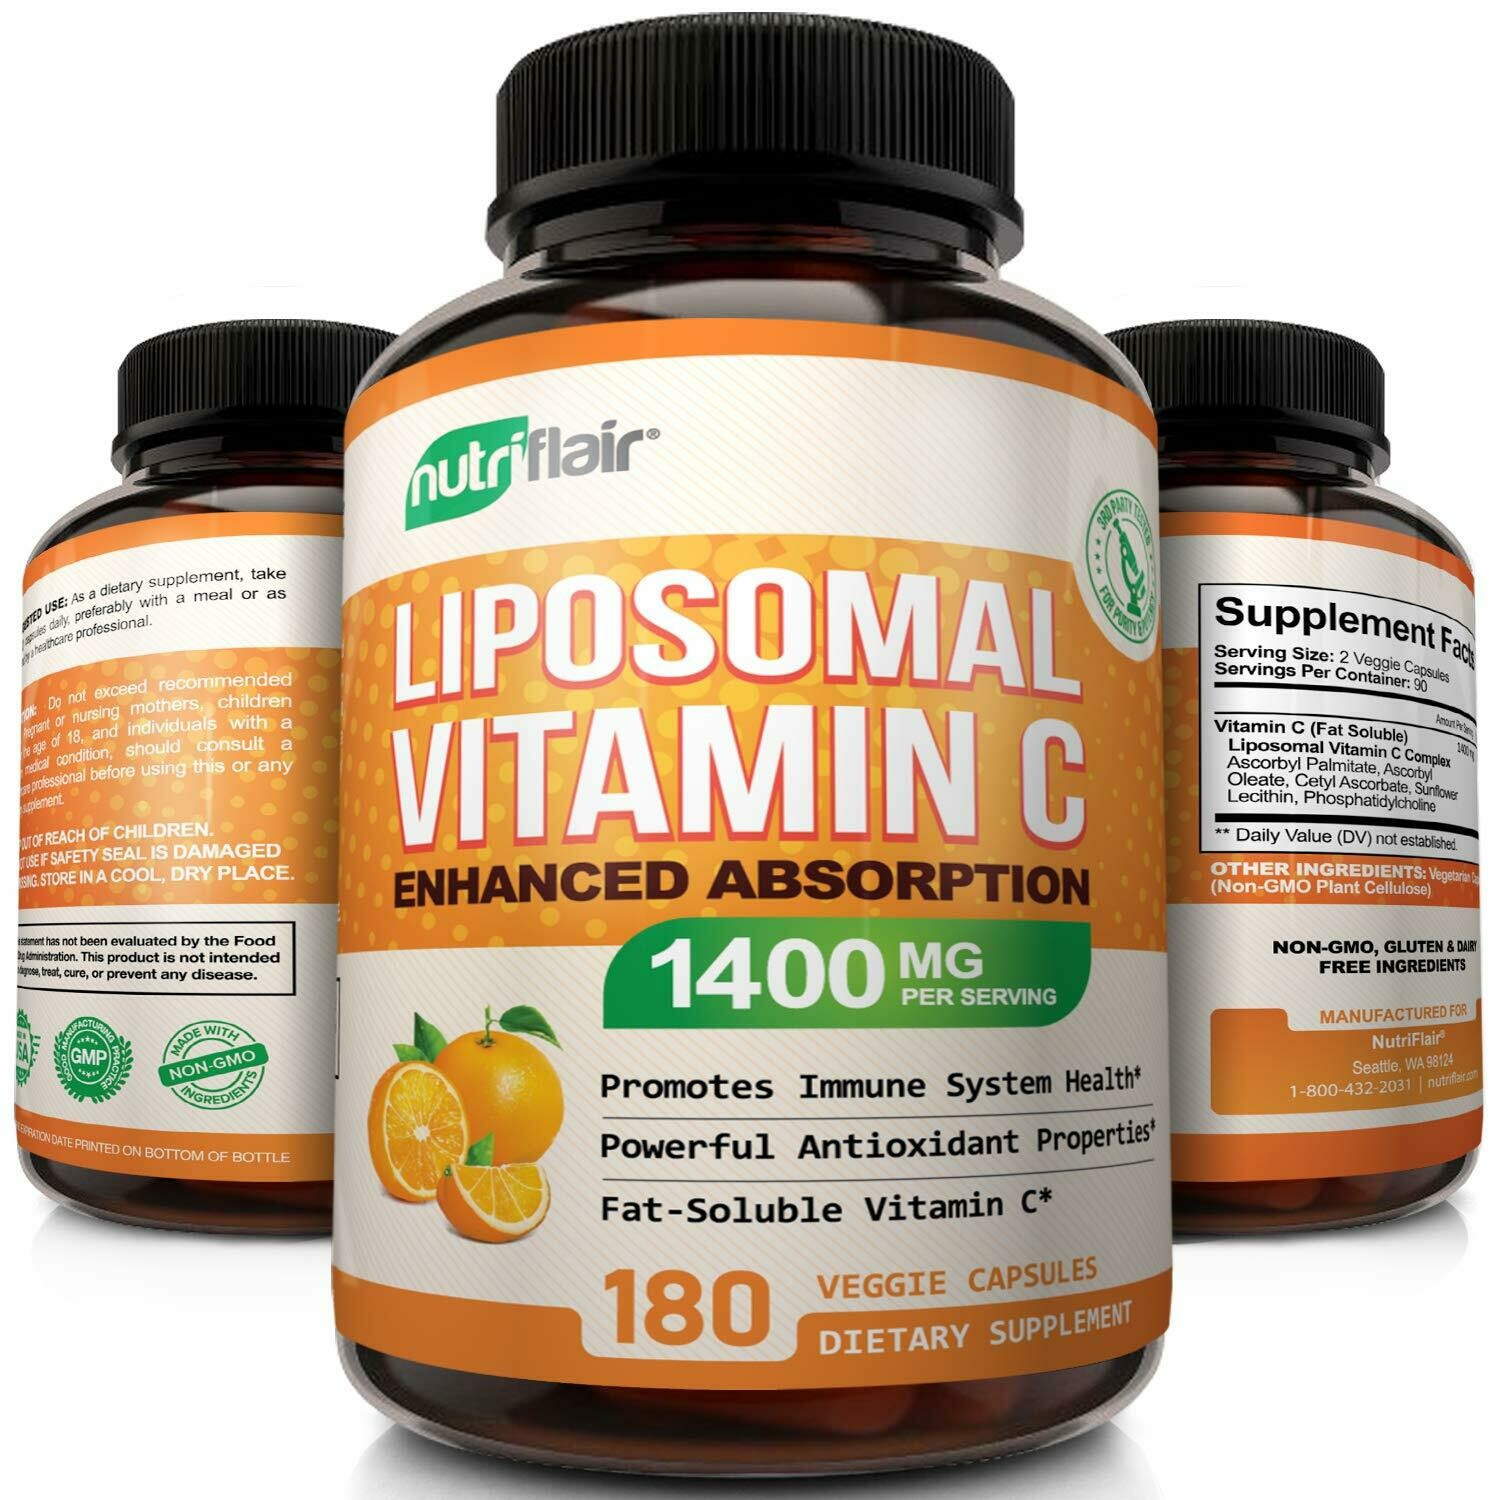 ויטמין C ליפוזומלי - 1400 מ"ג למנה, 180 כמוסות צמחיות, לא מהונדס.